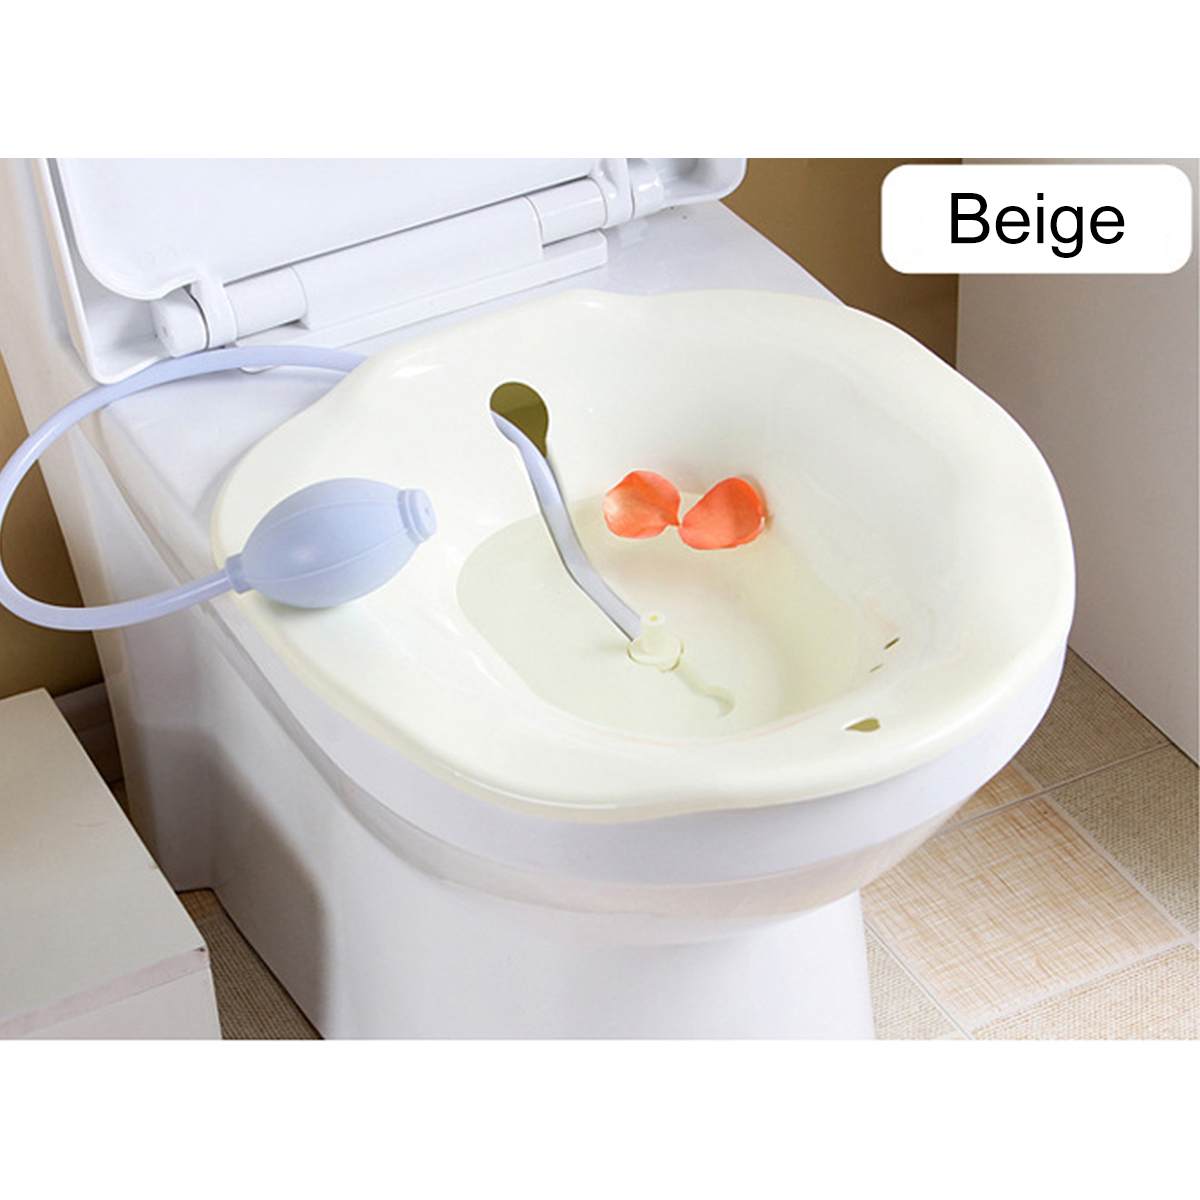 Bærbar 2.5l bidet sitz badekar babysygeplejeboks kit postpartum hæmorroide vaskesprøjte på toilet: Beige